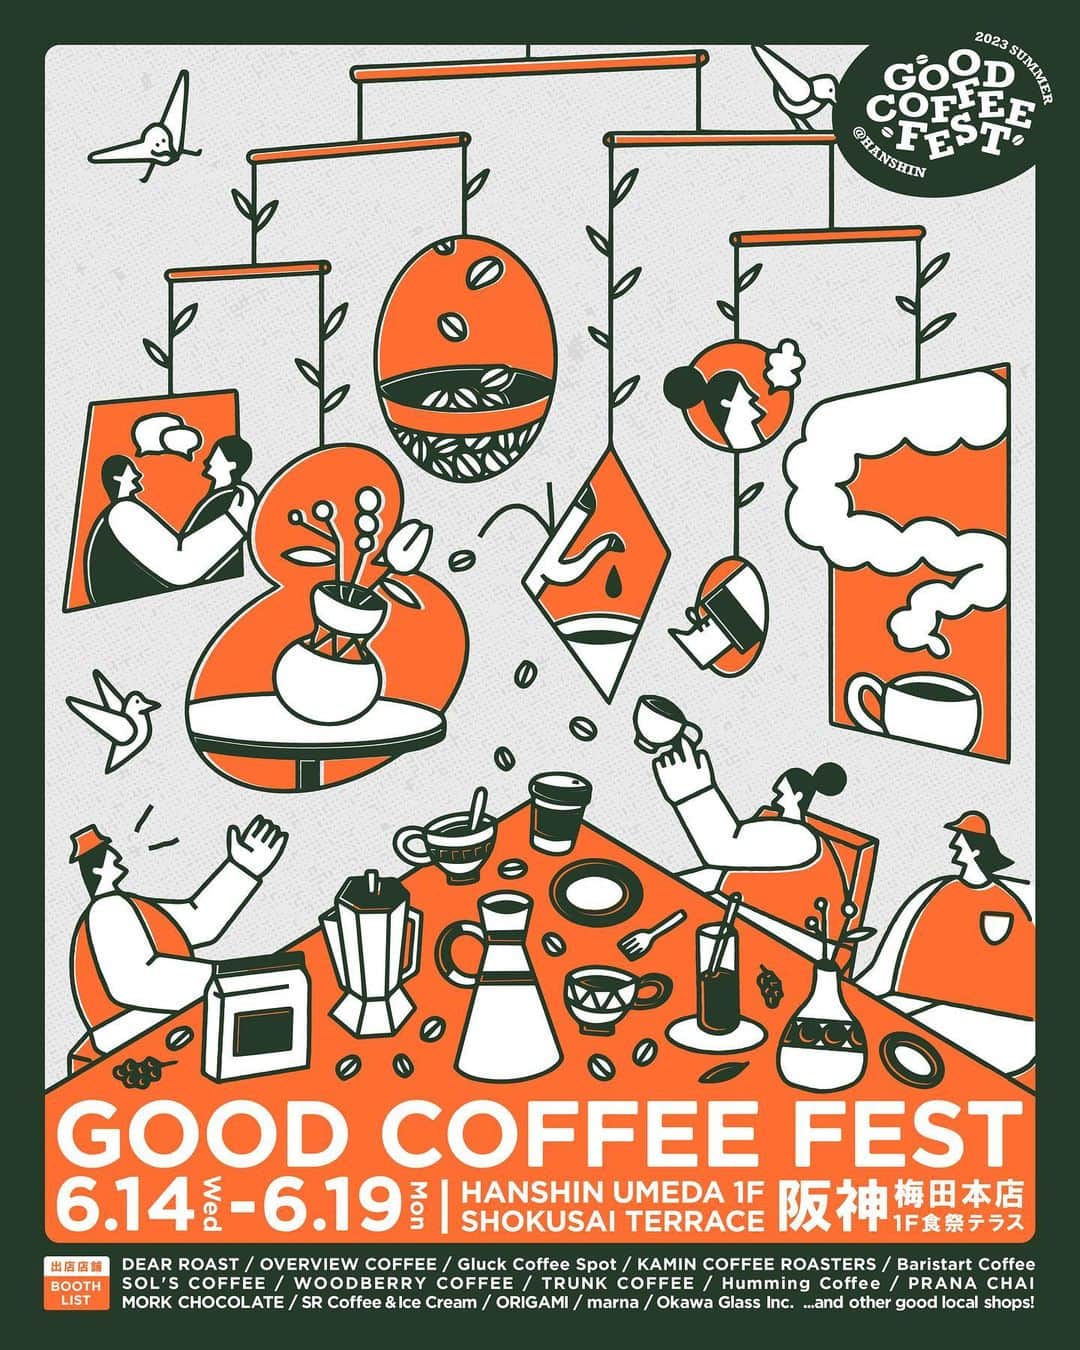 goodcoffeemeのインスタグラム：「. GOOD COFFEE FEST@HANSHIN 2023 summer  Good Coffee 監修のコーヒーイベント「GOOD COFFEE FEST」  今年の夏も6月14日(水)〜19日(月)の6日間、大阪での開催が決定しました！会場は大阪・阪神梅田本店1F「食祭テラス」。  GOOD COFFEE FEST@HANSHIN 2023 summer のテーマは「Good Neighbors, Good Coffee.」  ーーーーー 地元で愛される美味しいコーヒー。 コーヒーショップは地域のコミュニティに欠かせない存在でありたい。 作っているものは1杯のコーヒーだけど、その土地に存在し、コーヒーを介することで地域のコミュニティが活発になる気がする。 地元に根付いたコンパクトなお店から、縁あって複数店舗の運営ができるお店、そして地産地消の食材にこだわったお店など、こだわりの店舗を全国から誘致。 大阪初出店の地元で愛されるコーヒーショップが大集結しました。  ーーーーー  北は北海道、南は沖縄まで日本全国から個性豊かなロースターや、この季節にぴったりなドリンク、おすすめグッズが一同に会する、GOOD COFFEE FEST 2023 summer の出店ショップのラインナップはこちら！  ＜#GCF 2023 summer 出店ショップ＞ ・COFFEE BARISTART COFFEE／北海道 (@baristartcoffee) SOL'S COFFEE／東京 (@solscoffee) WOODBERRY COFFEE／東京 (@woodberrycoffee) TRUNK COFFEE／愛知 (@trunkcoffee) KAMIN COFFEE ROASTERS／和歌山 (@kamin_coffee_roasters) Overview Coffee／広島 (@overviewcoffeejapan) DEAR ROAST／山口 (@dearroast) Gluck Coffee Spot／熊本 (@gluckcoffeespot) Humming Coffee／沖縄 (@humming_coffee_okinawa)  ・OTHER SR coffee & ice cream／東京 (@sr_coffee_icecream_jimbocho) Mörk Chocolate／オーストラリア (@morkchocolatejp) PRANA CHAI／オーストラリア (@pranachaijp) Sunday Bake Shop／東京 (@sunday_bake_shop)  ・GOODS marna／東京 (@marna_inc) ORIGAMI／岐阜 (@origami_cup) 大川硝子工業所／東京 (@okawaglass) .」